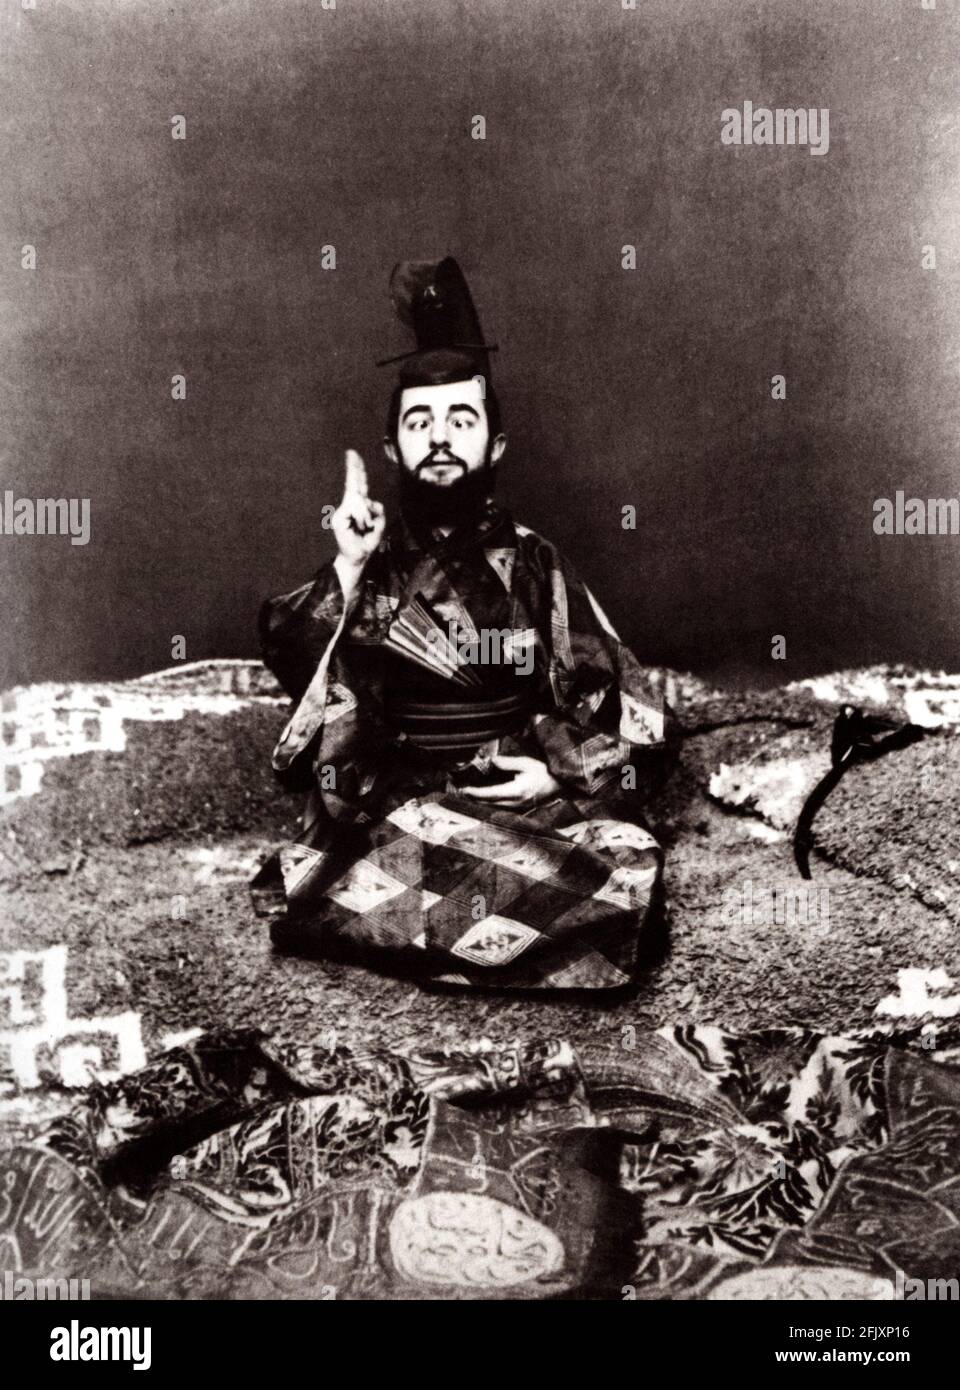 1892 ca : le célèbre peintre français Henry de TOULOUSE LAUTREC ( 1864 - 1901 ) en costume japonais - PITTORE - ARTE - ART - artiste - artista - TOULOUSE-LAUTREC ( 1864 - 1901 )IMPRESSIONISTA - IMPRESSIONISMO - IMPRESSIONNISTE - BELLE EPOQUE - Moulin Rouge - Paris - Parigi - nano - nain - cappello - chapeau - barba - barbe - strabico - strabismo - occhi strai - orientale - orientalisme - orientalista - bicentralismo - orientalisme - bachigi - moustache ---- Archivio GBB Banque D'Images